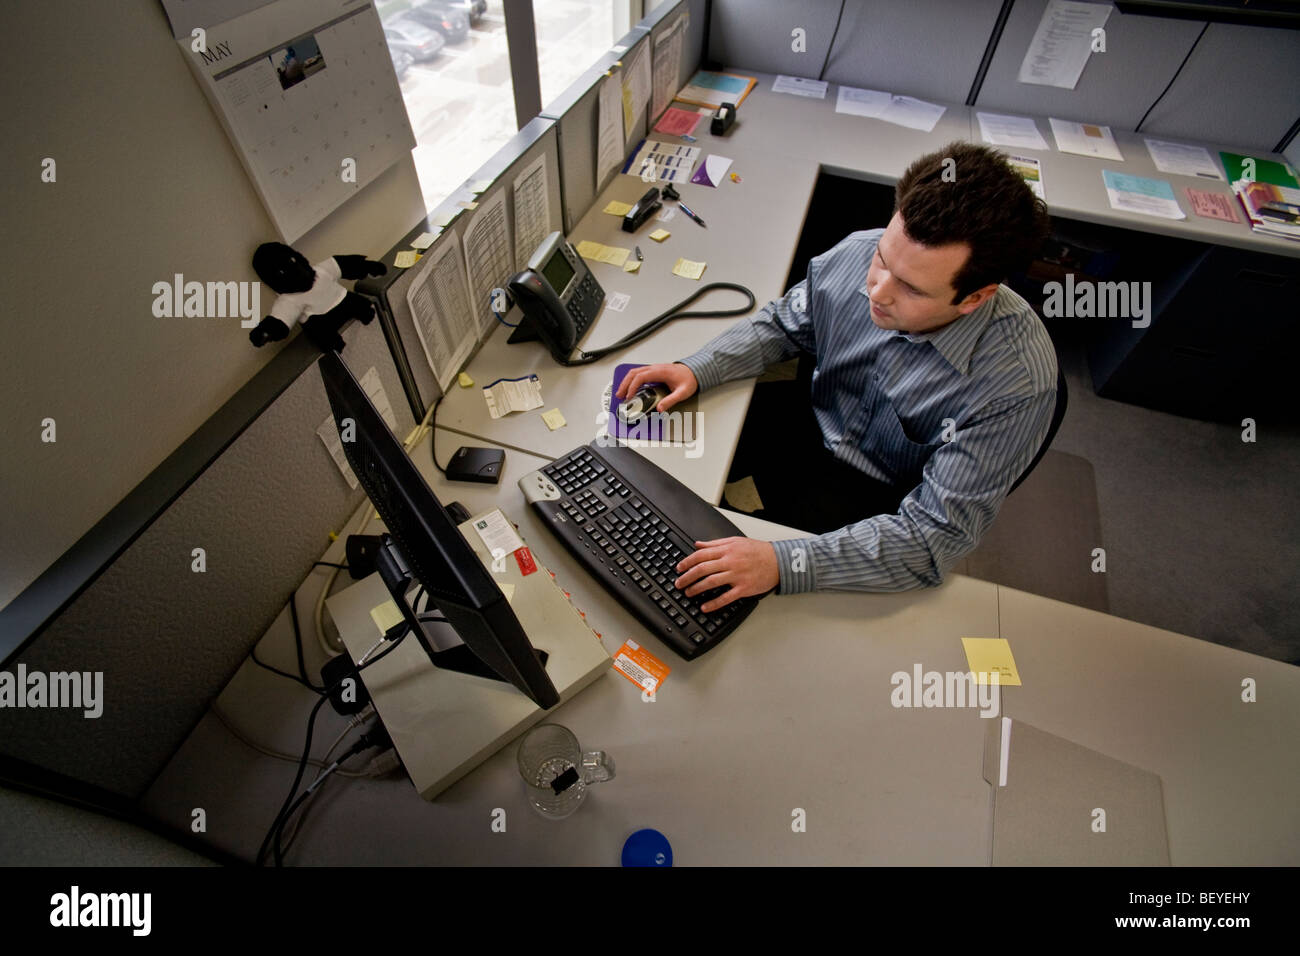 Irvine, en Californie, à un cabinet de consultation financière, un chercheur travaille à son poste de l'ordinateur. Banque D'Images